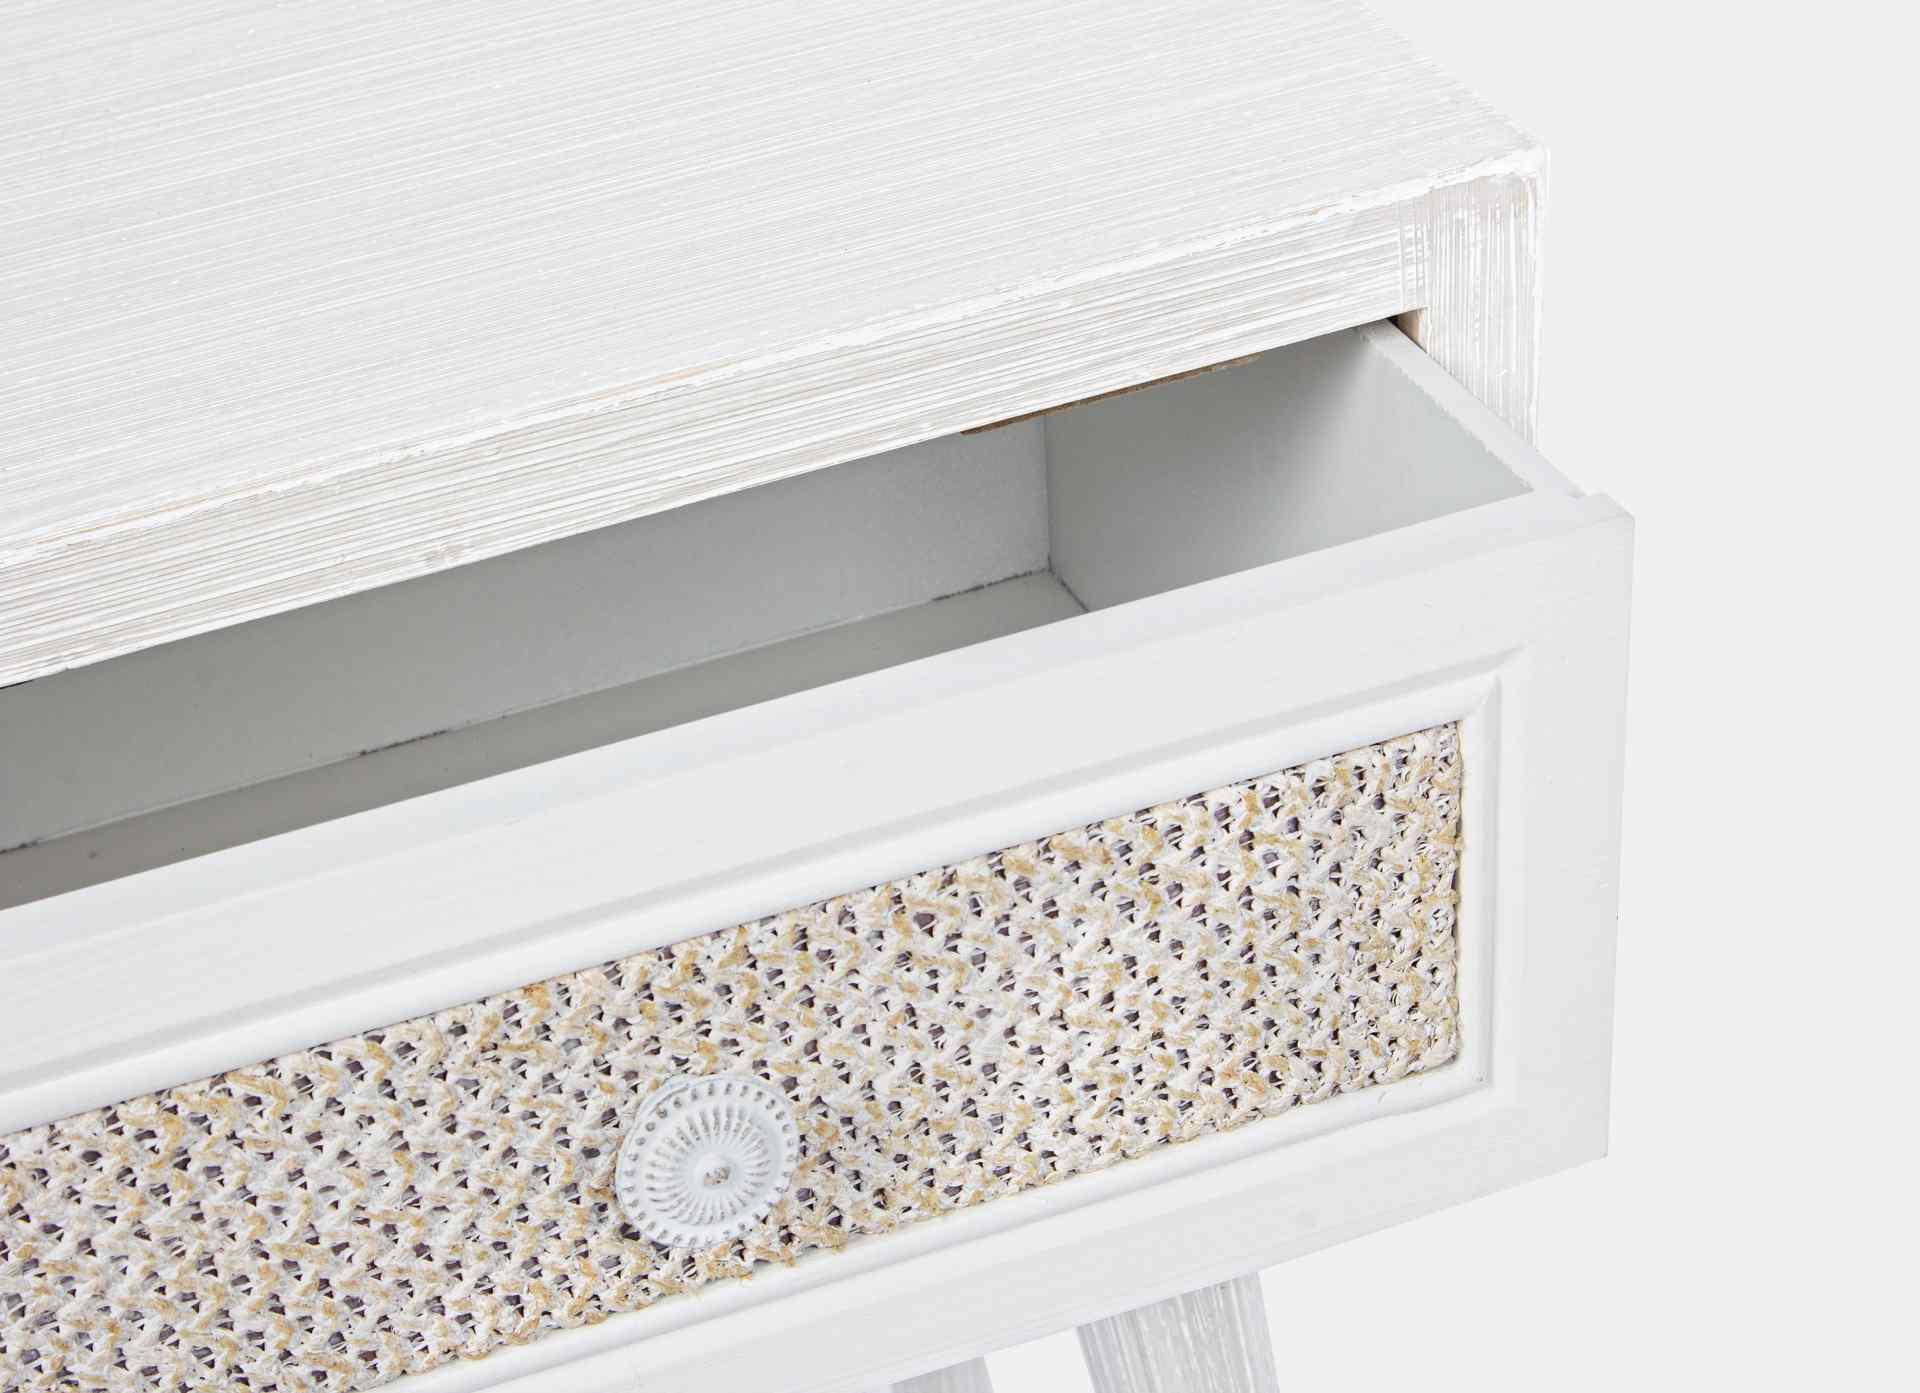 Der Nachttisch Montiel überzeugt mit seinem klassischen Design. Gefertigt wurde er aus MDF, welches einen weißen Farbton besitzt. Die Schublade ist aus Leinen gefertigt. Der Nachttisch verfügt über eine Schublade. Die Breite beträgt 31 cm.